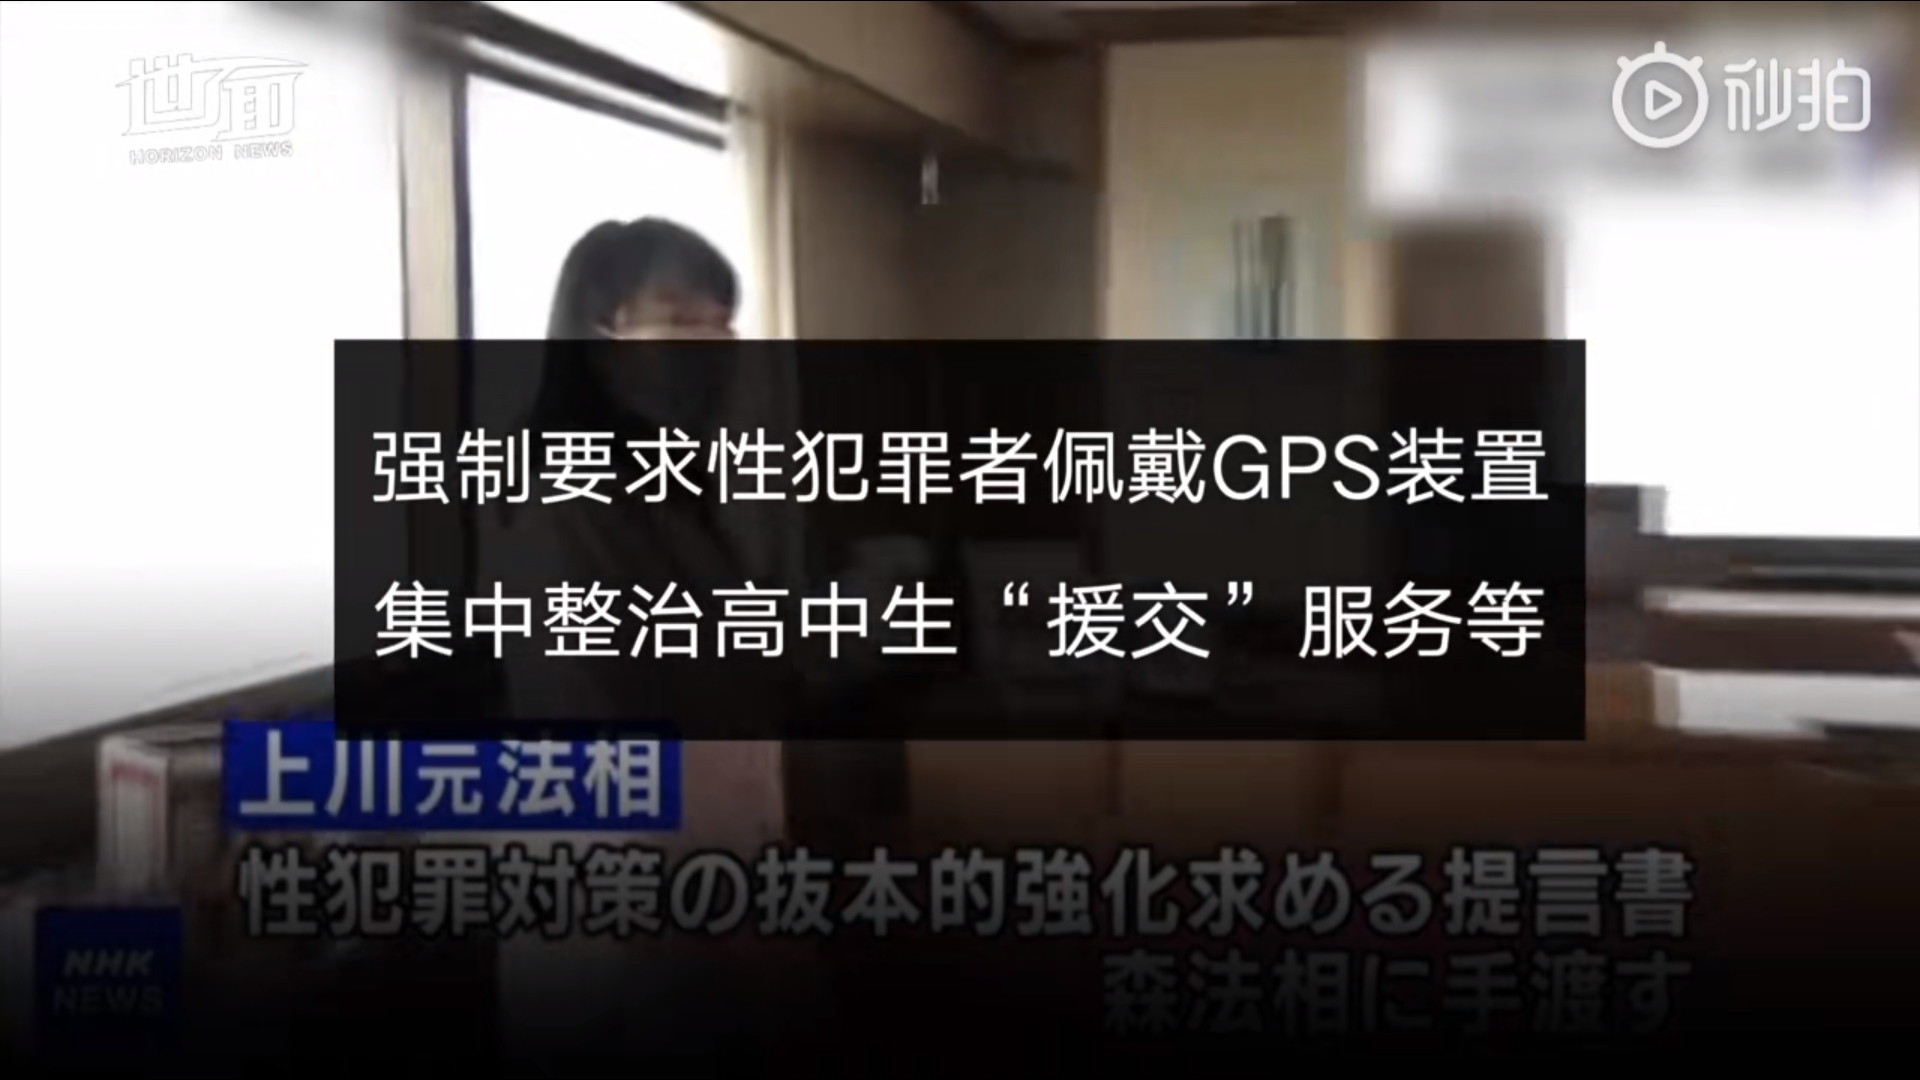 日本拟强制要求性犯罪者佩戴gps Acfun弹幕视频网 认真你就输啦 W ノ つロ